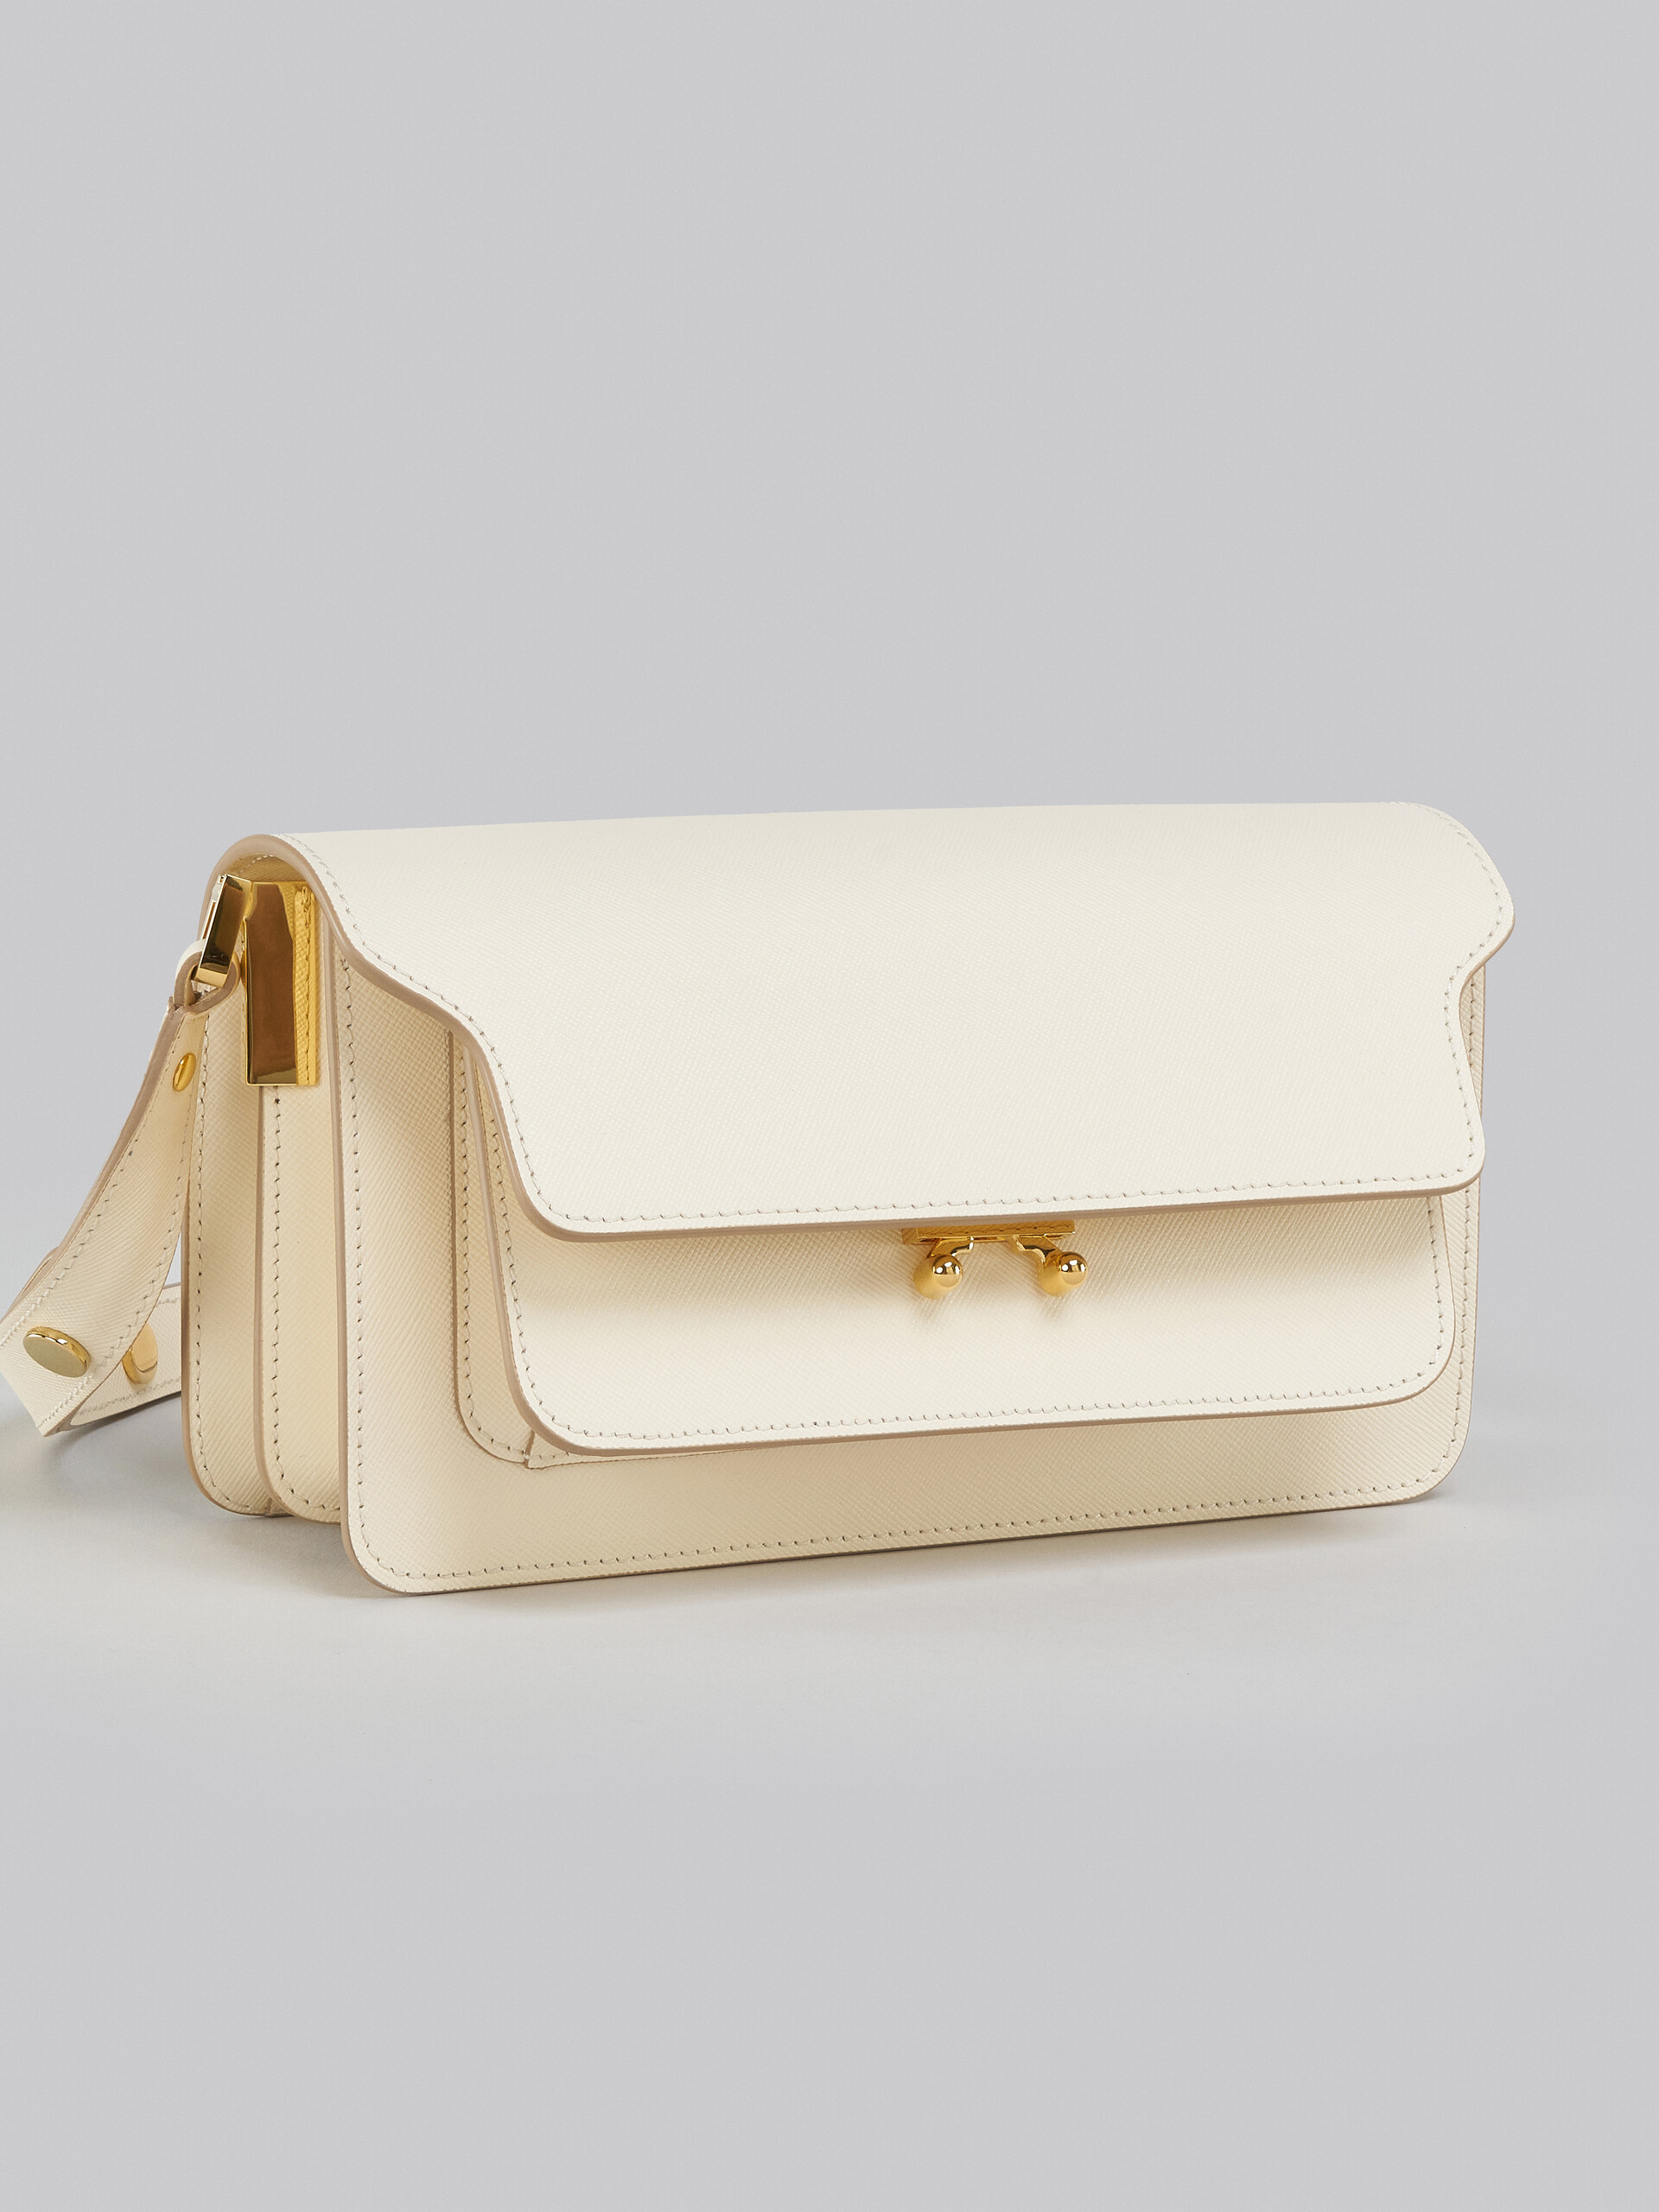 Tasche Trunk aus weißem Saffiano-Leder - Schultertaschen - Image 5